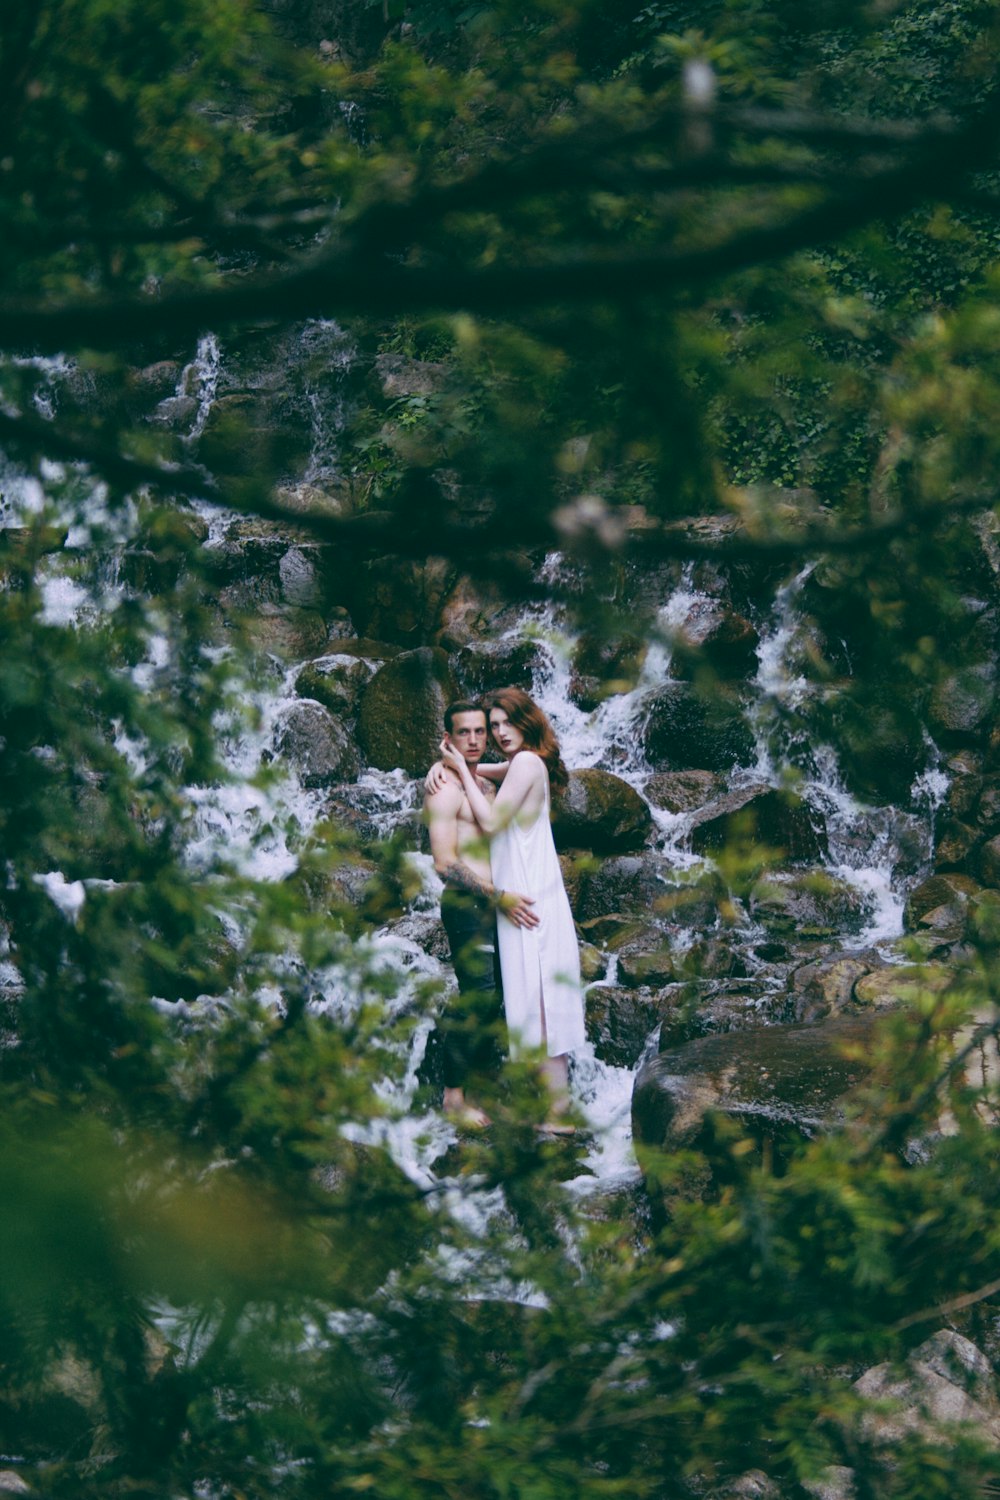 Homem e mulher abraçados em água corrente cercados por pedras